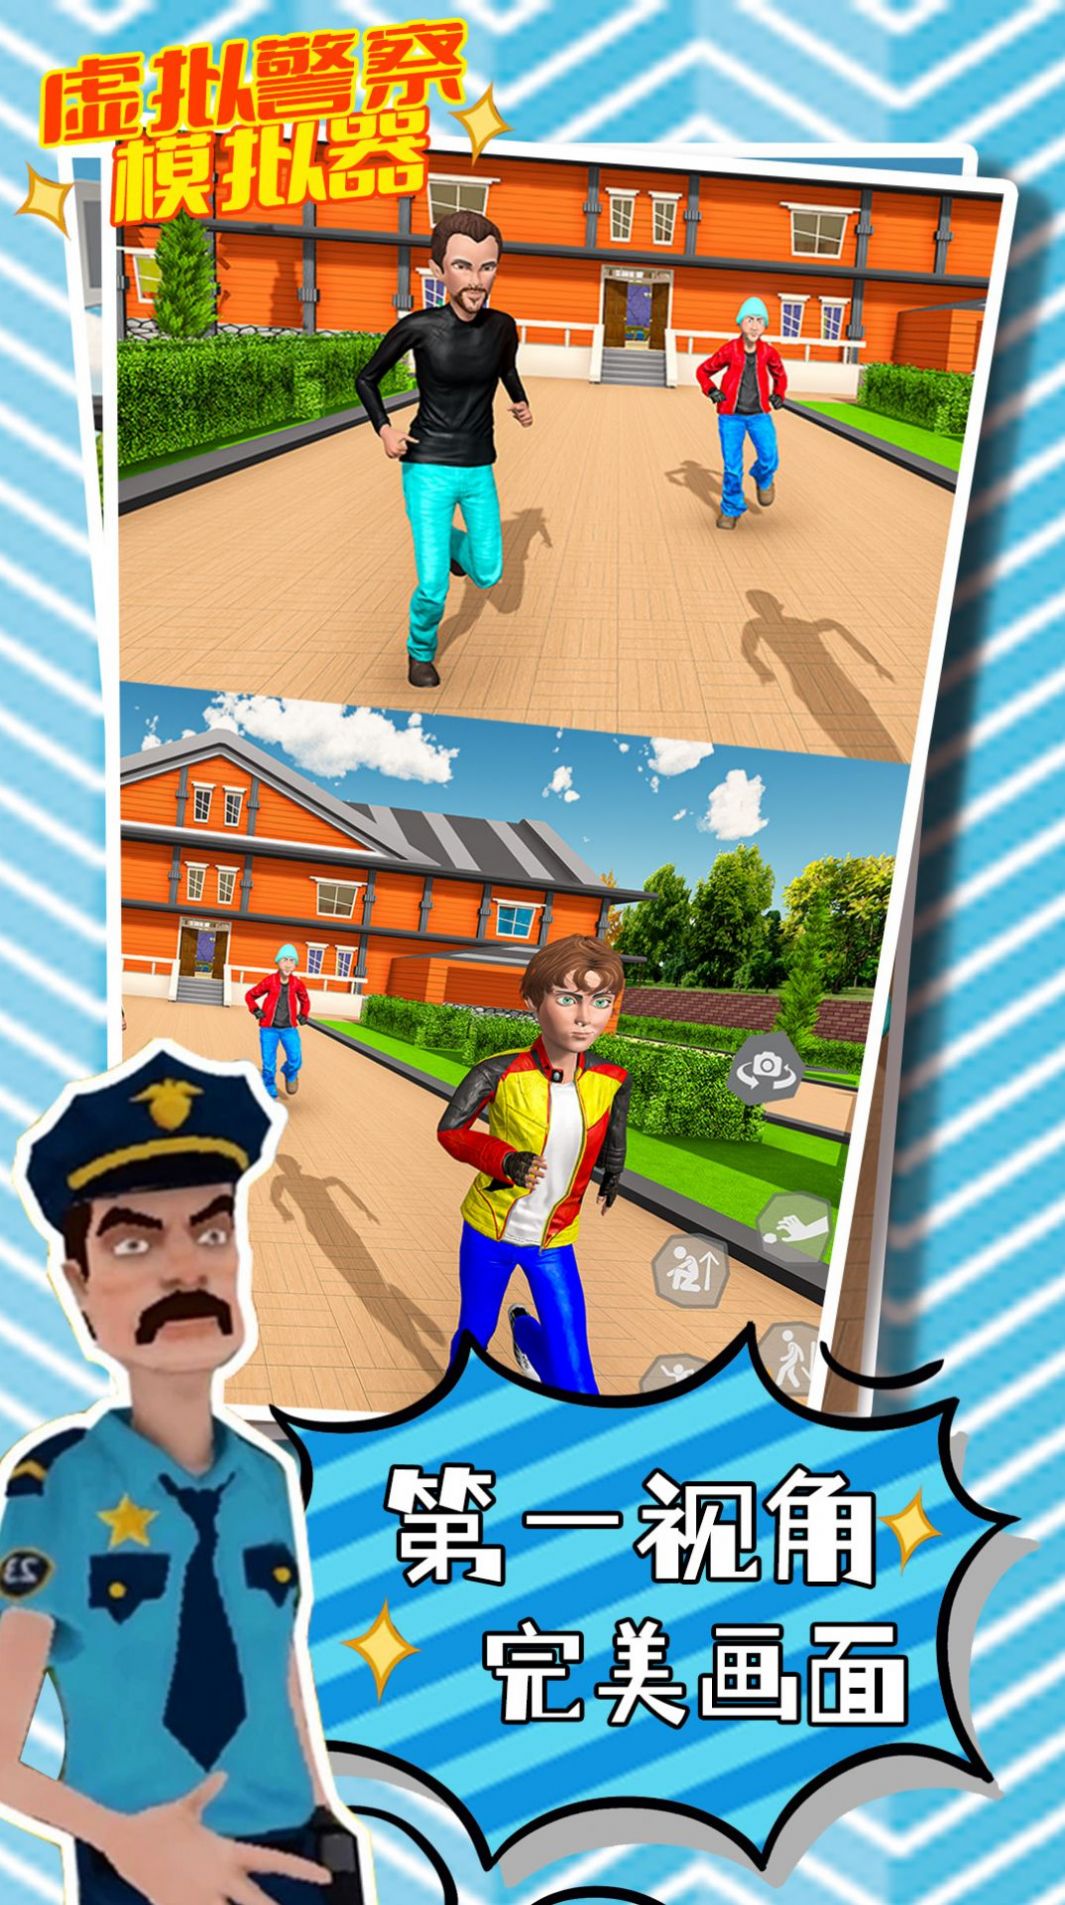 虚拟警察模拟器游戏官方版截图2: